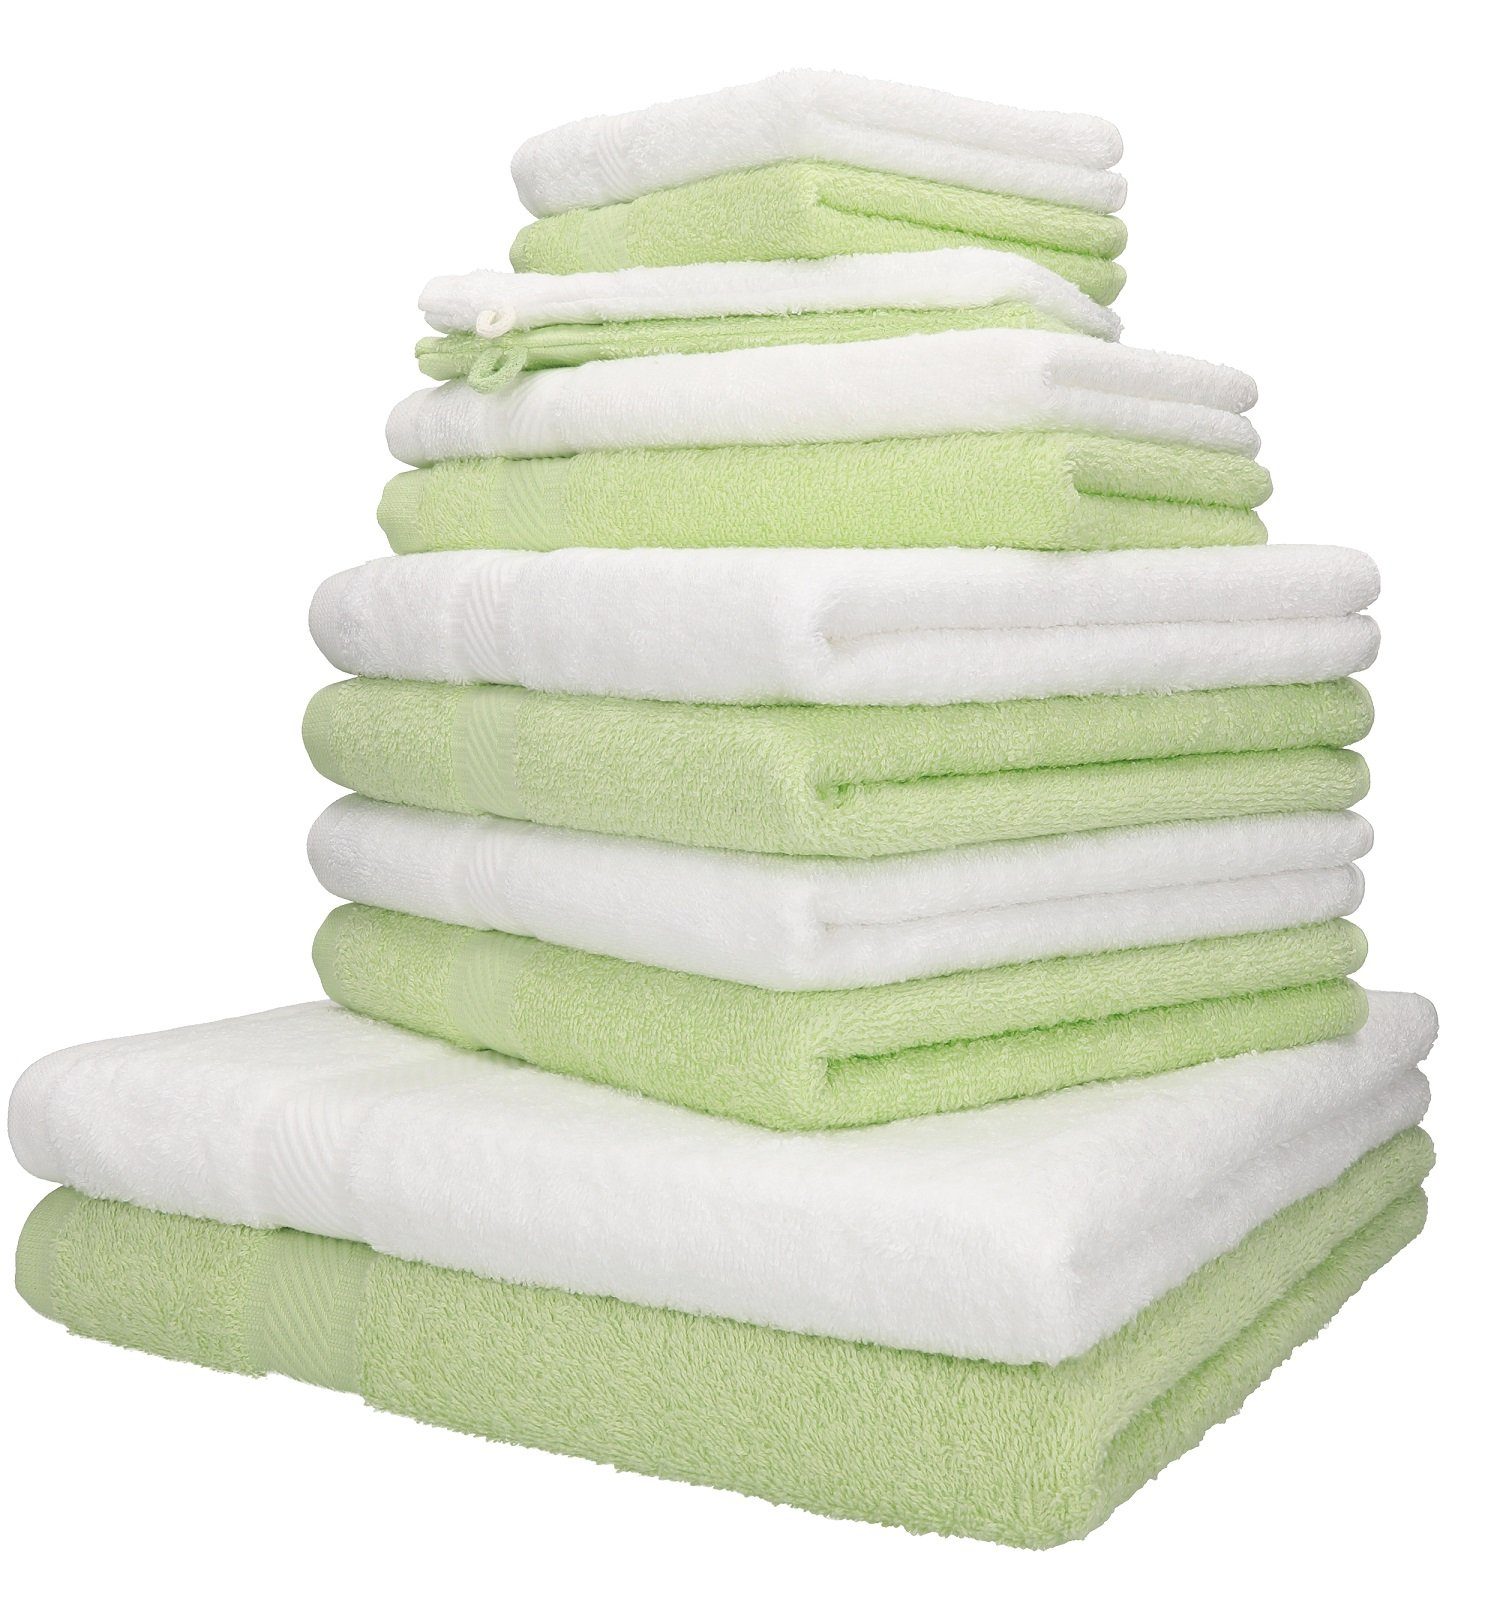 Betz Handtuch Set 12-TLG. Handtuch-Set Palermo 100% Baumwolle 2 Liegetücher 4 Handtücher 2 Gästetücher 2 Seiftücher 2 Waschhandschuhe Farbe grün und weiß, 100% Baumwolle, (12-tlg)